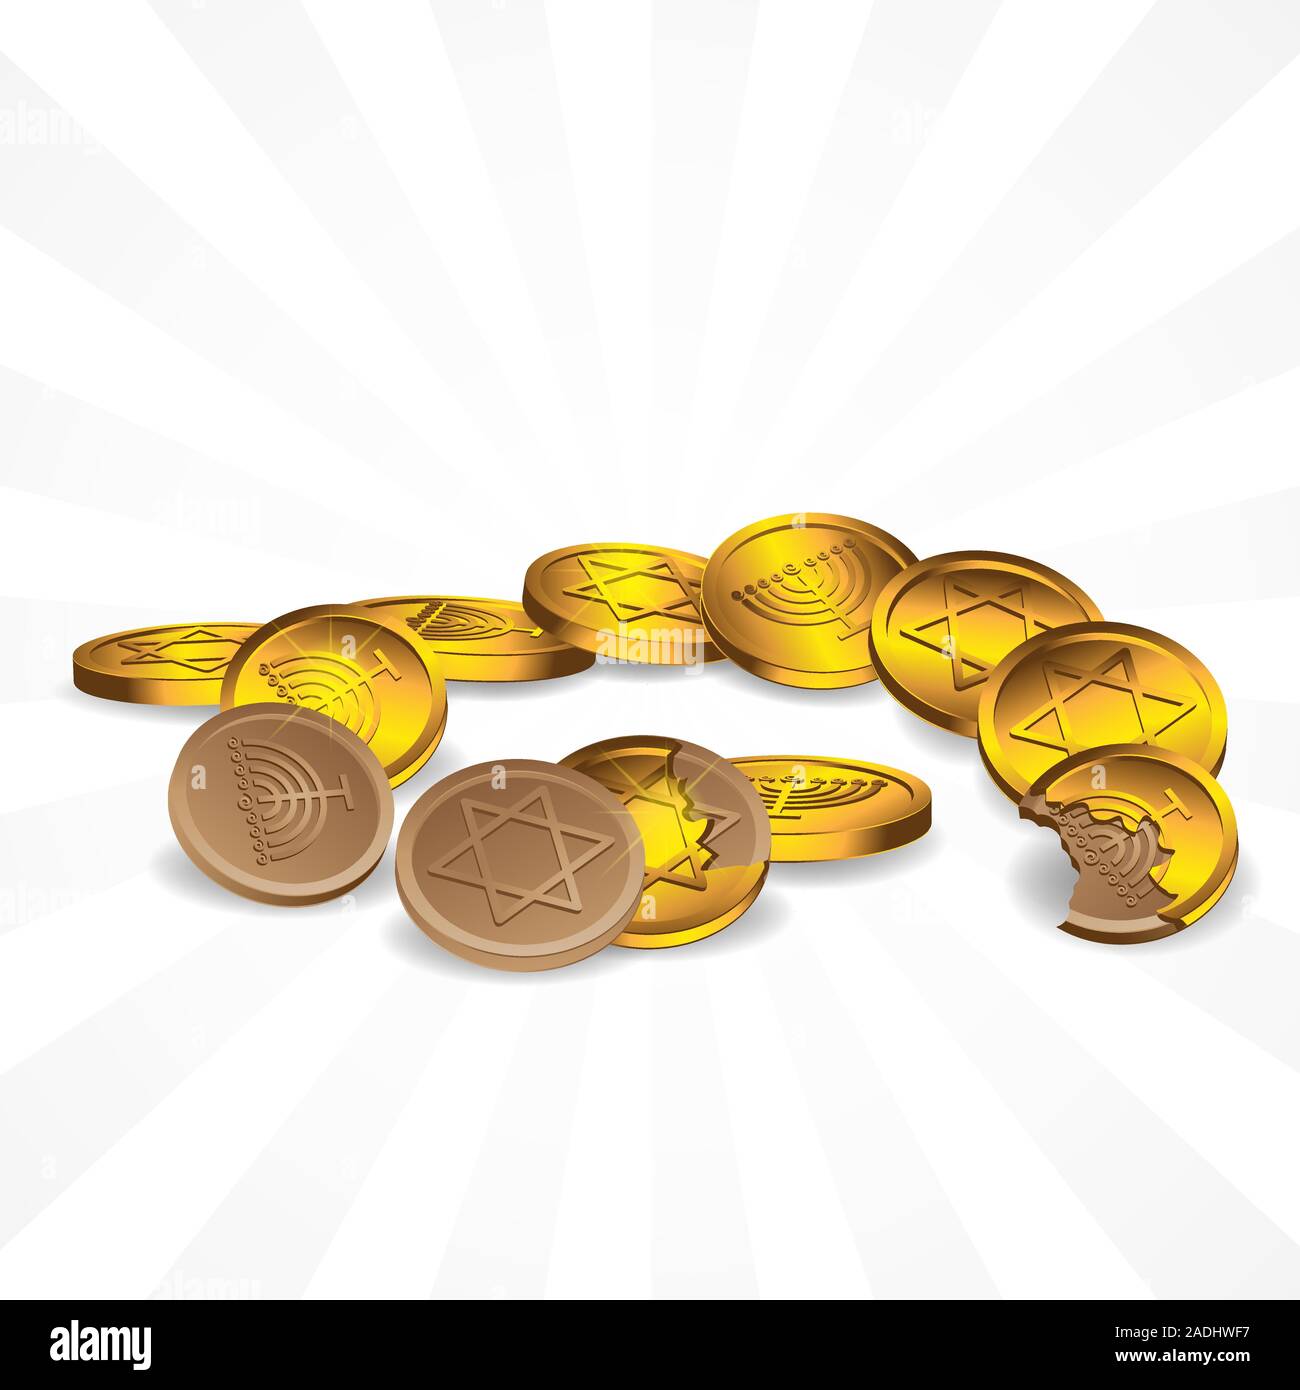 Chocolats en emballages d'or symboles de l'étoile de David et le chandelier à sept sur un arrière-plan. Image vectorielle. Illustration de Vecteur